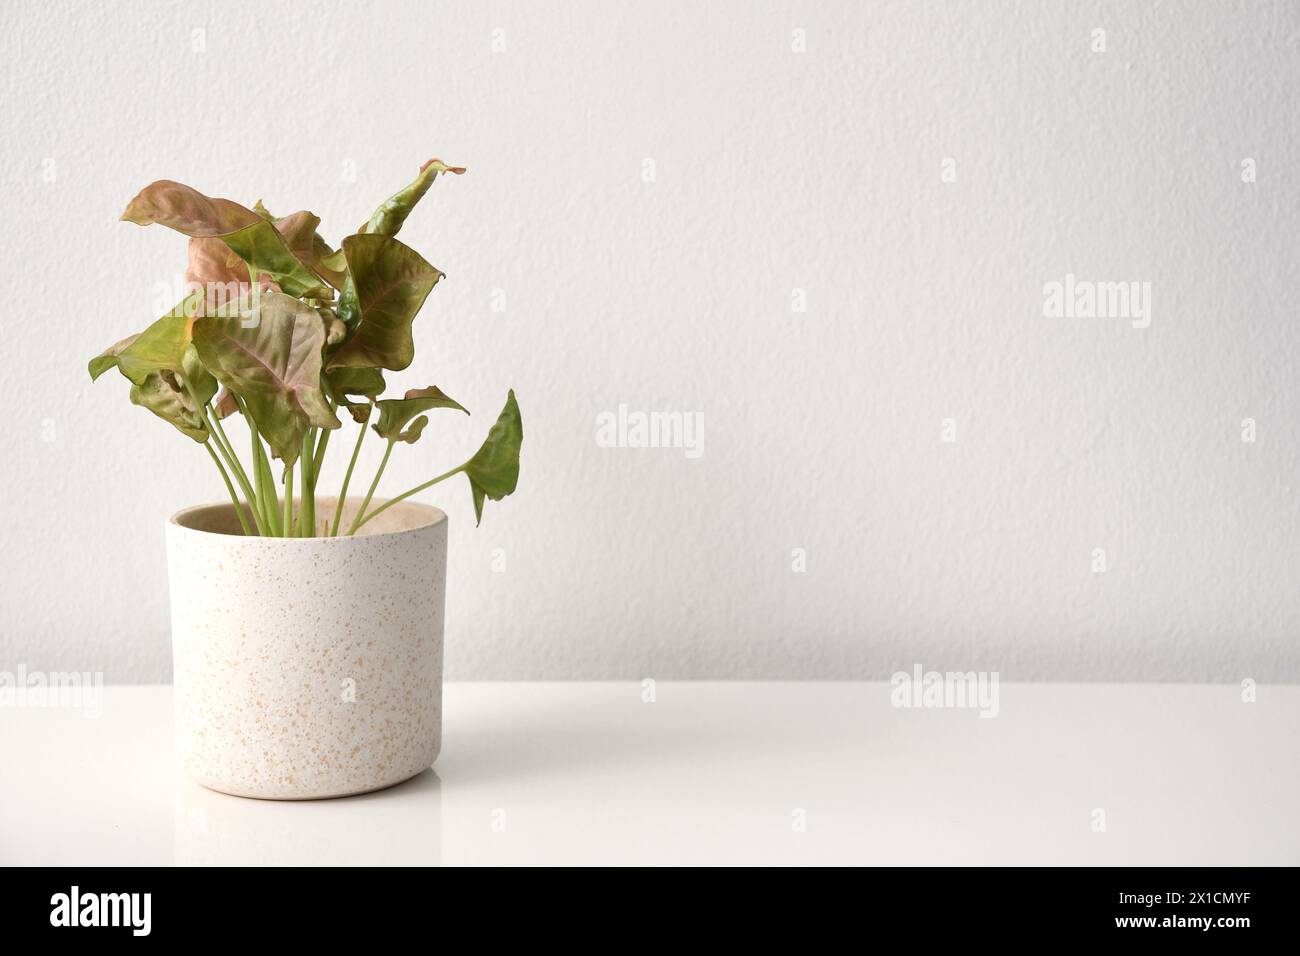 Plante d'intérieur Syngonium avec des feuilles roses et vertes, isolée sur fond blanc. La plante est dans un pot en céramique blanche, isolé sur un fond blanc. Banque D'Images